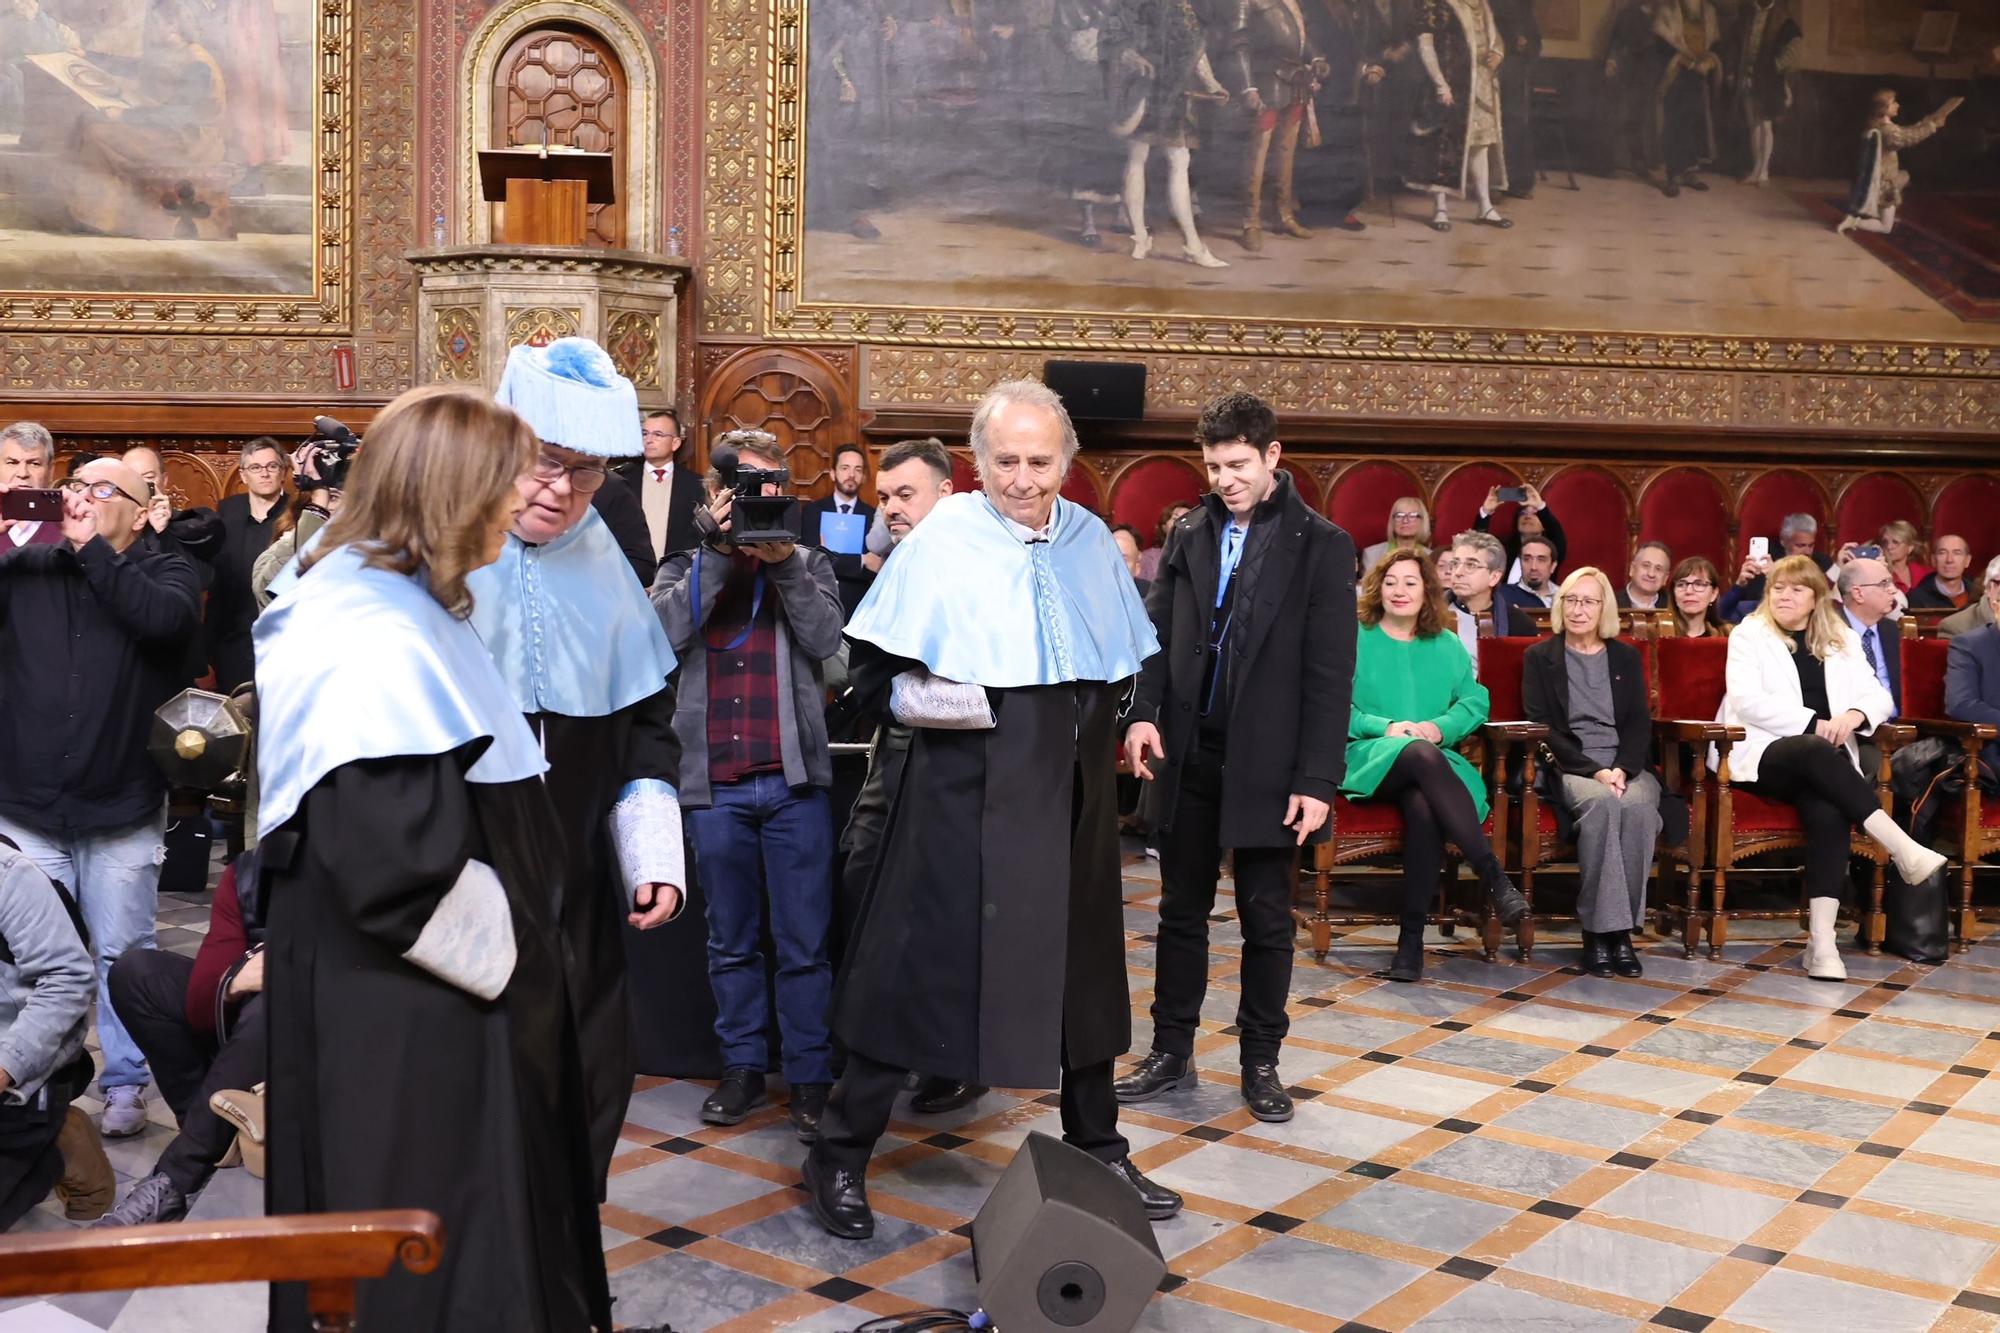 Maria del Mar Bonet y Joan Manuel Serrat defienden la música y la libertad en su 'honoris causa' por la Universitat de Barcelona